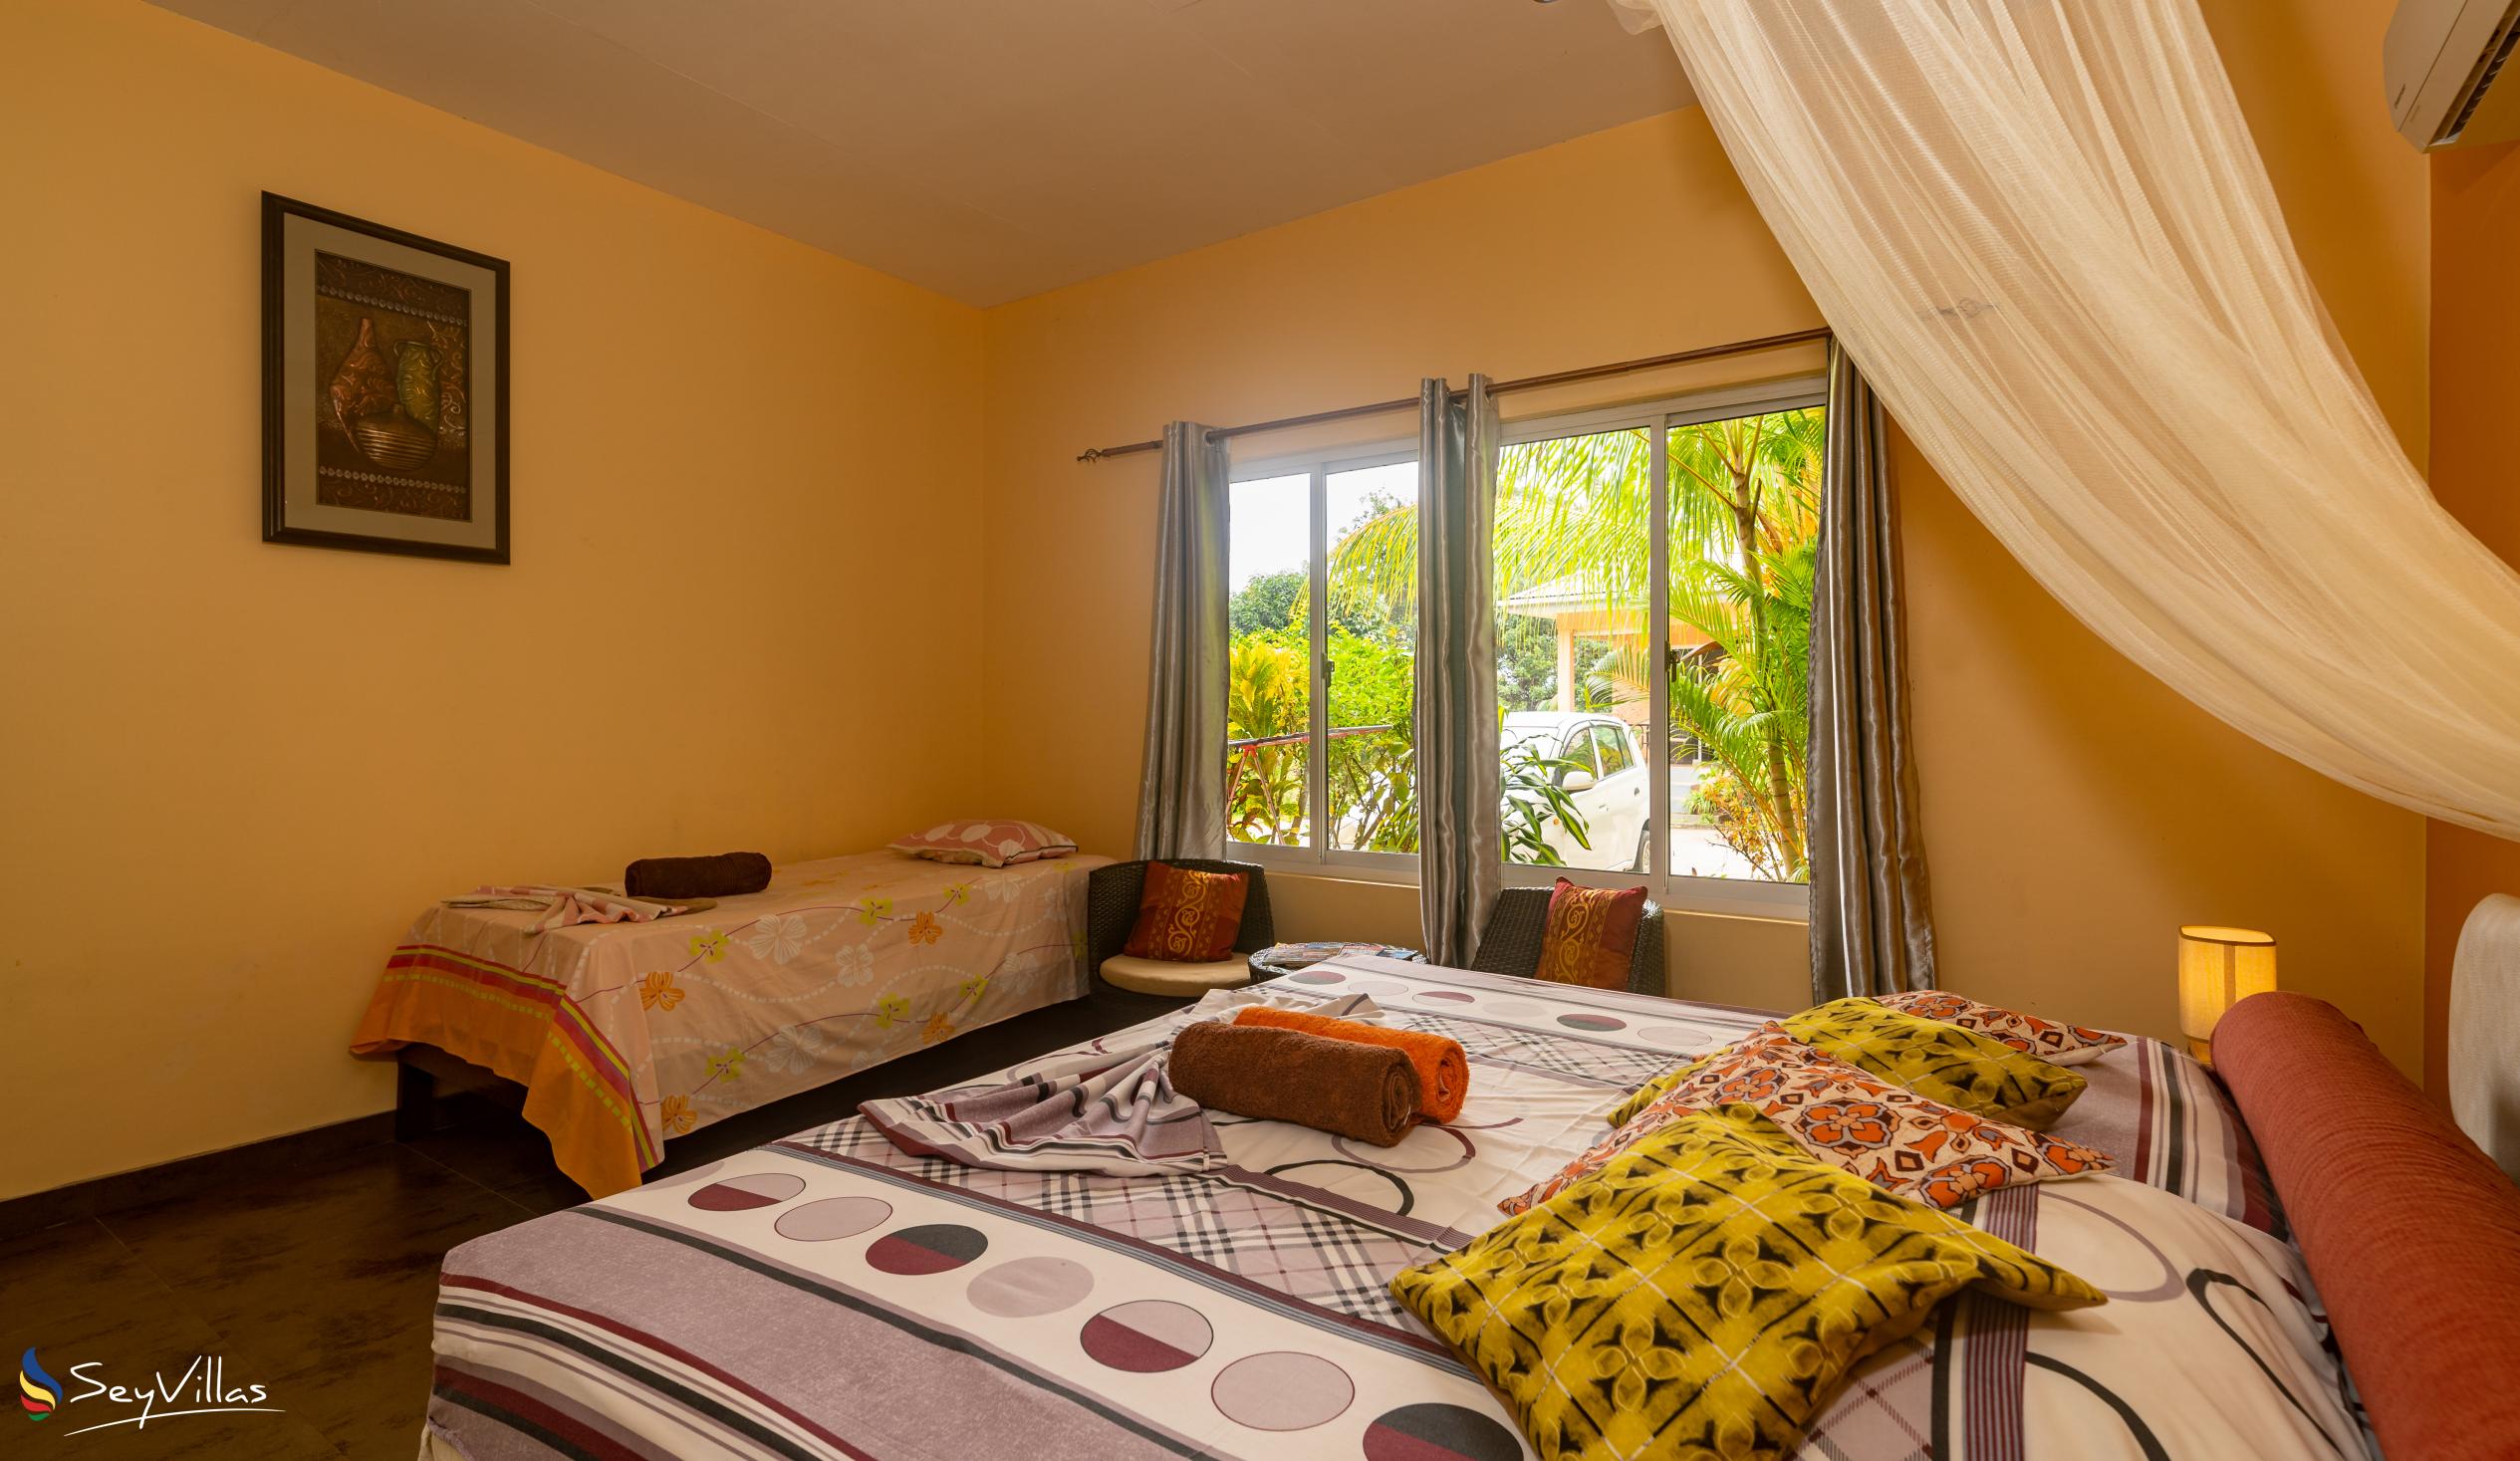 Foto 67: Alha Villa - Villa 2 chambres - Mahé (Seychelles)